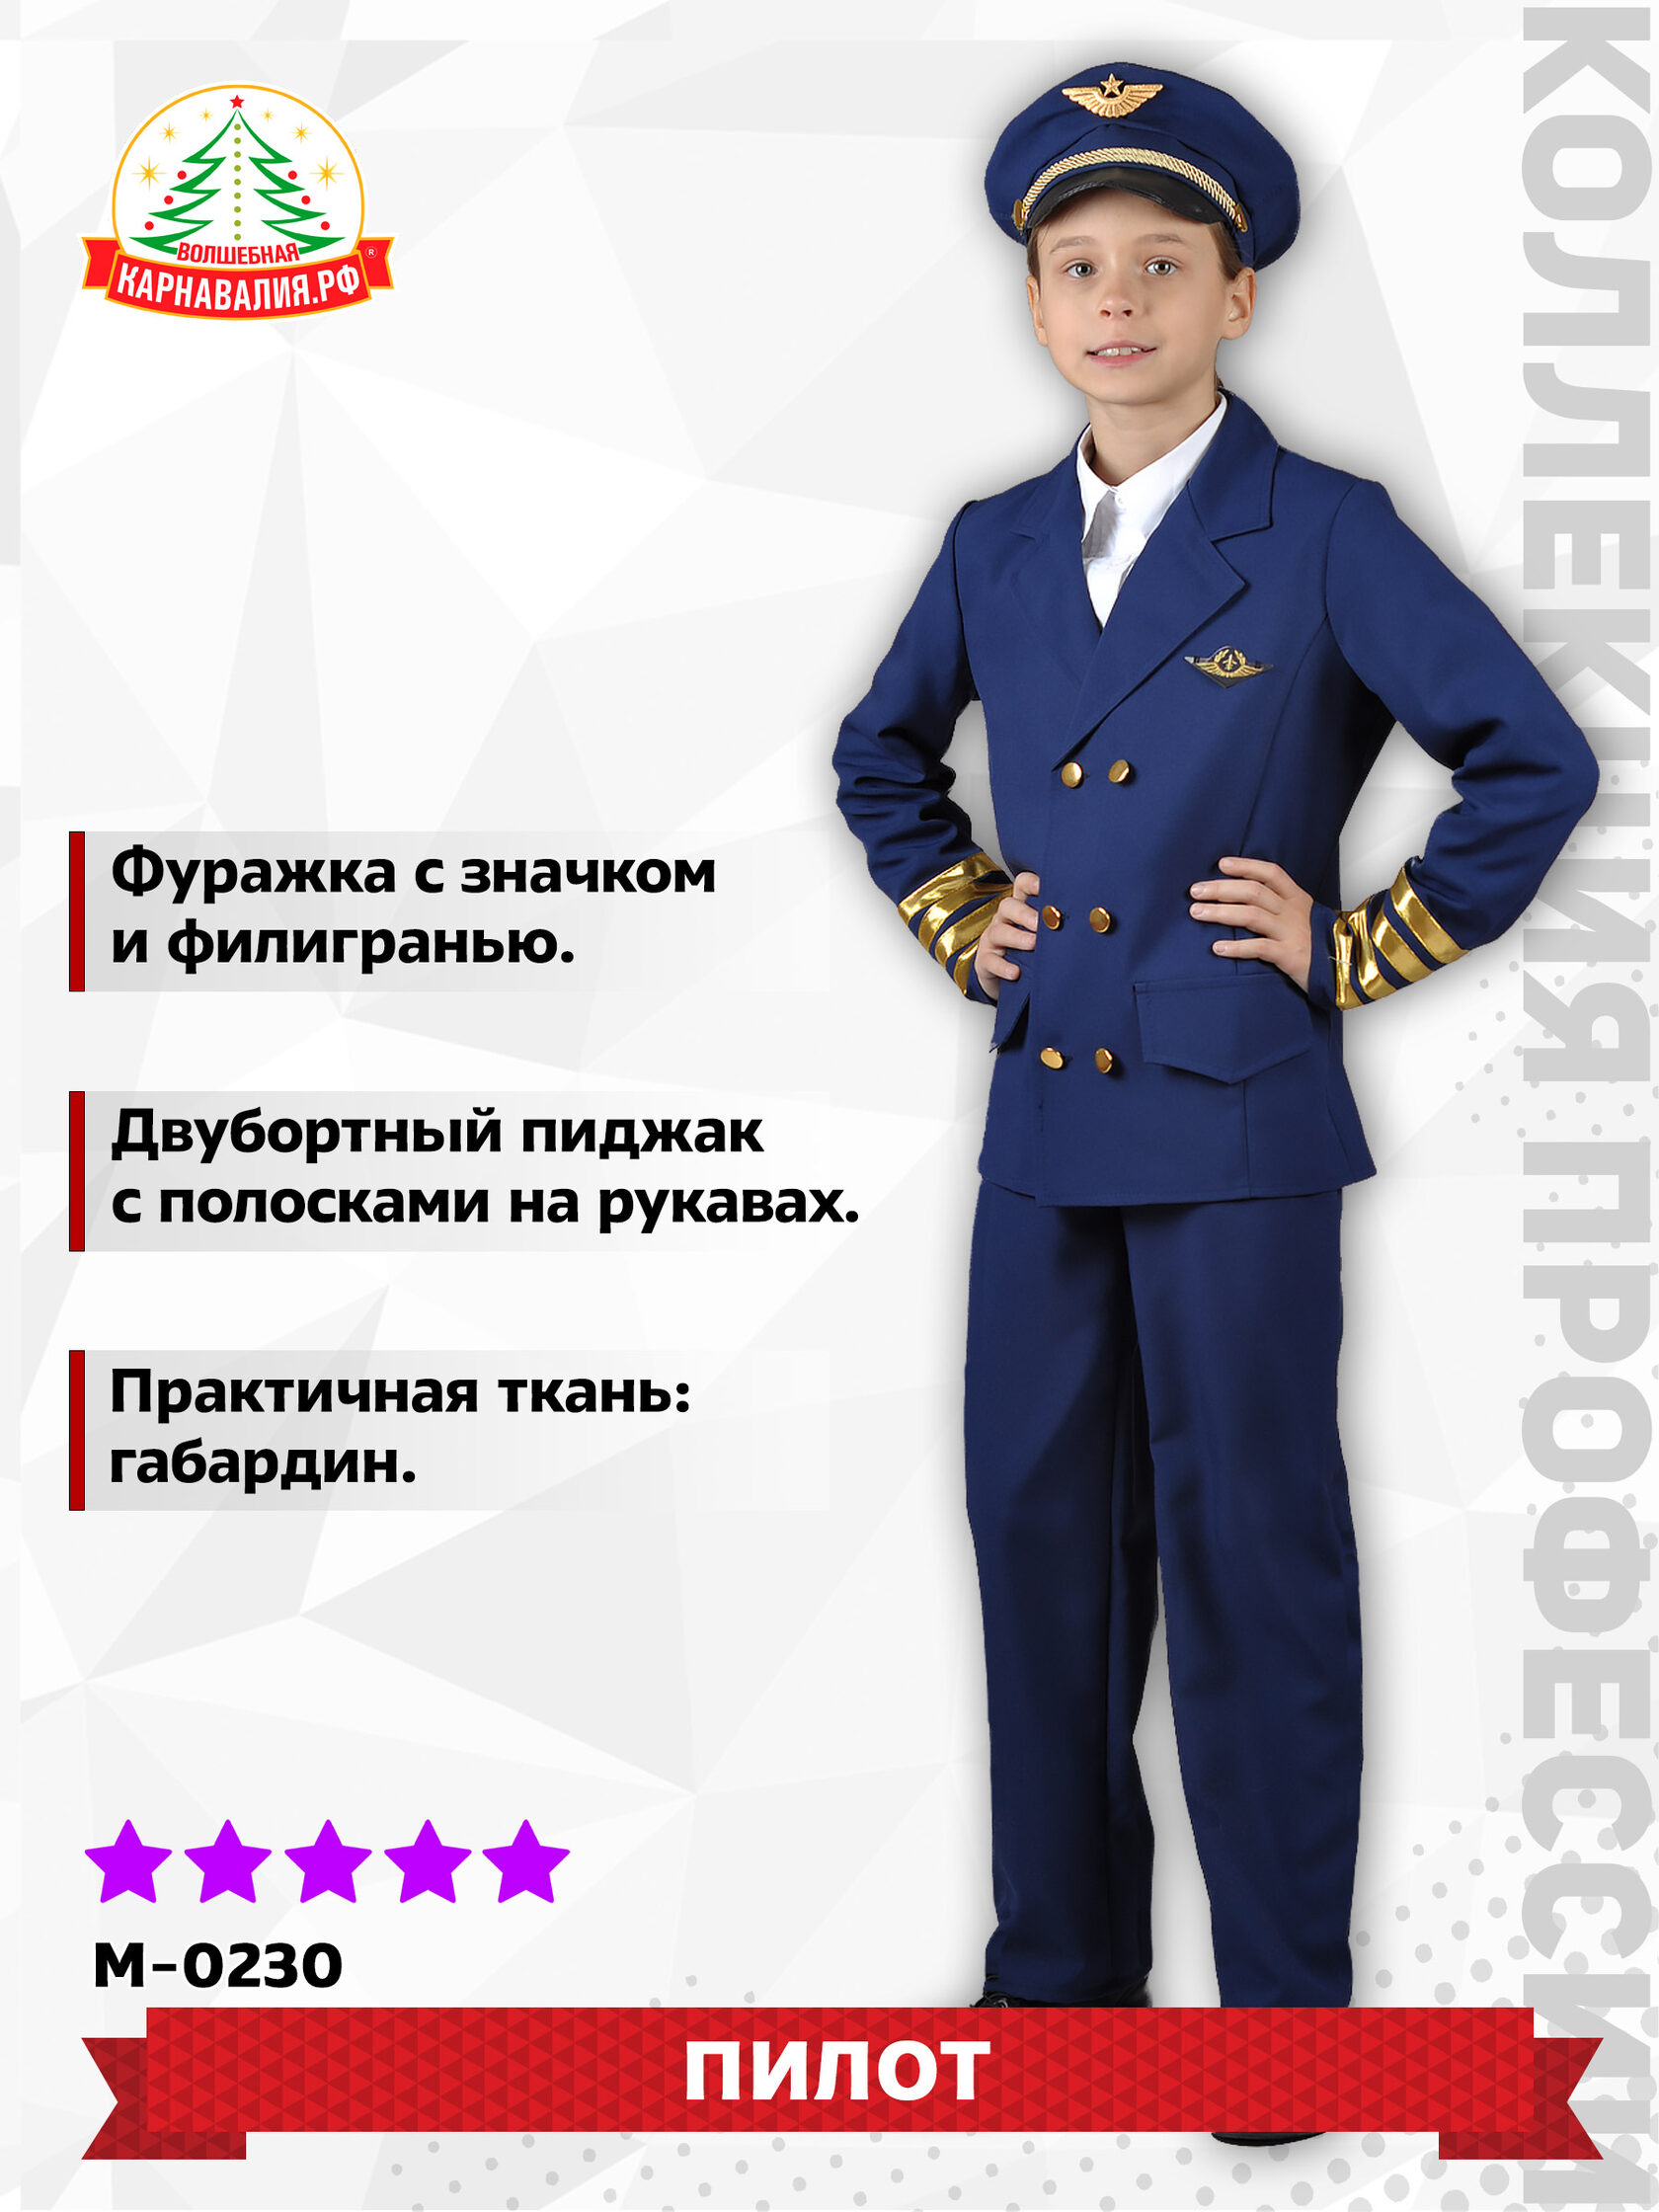 Купить детский костюм летчика в Москве, цена в интернет магазине